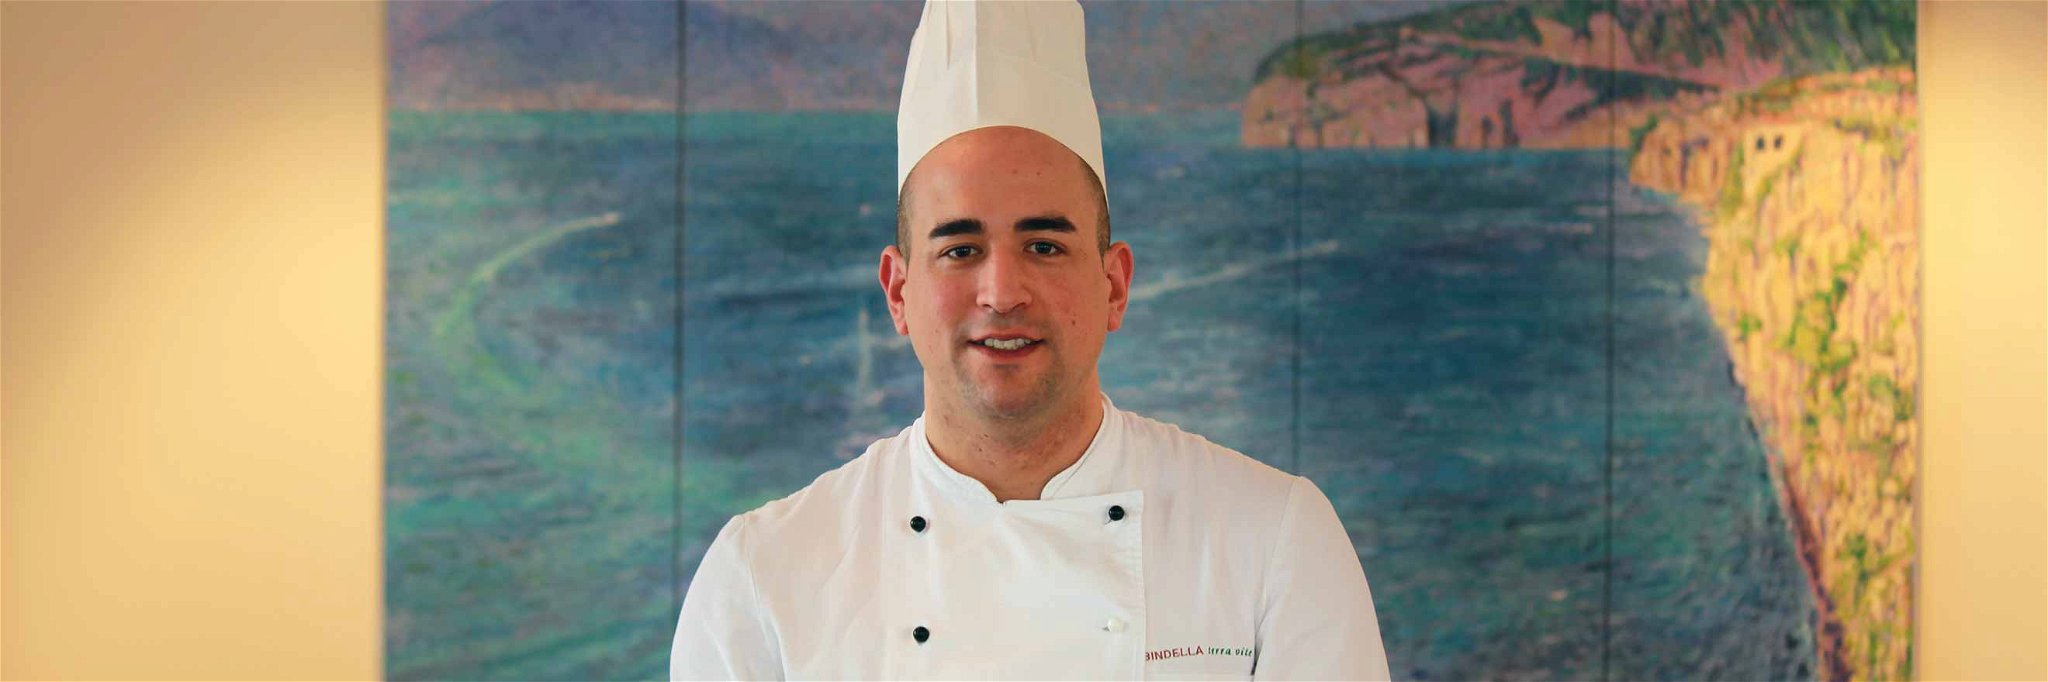 Marco Fontò, Küchenchef im Zürcher «Ristorante Amalfi», ist ein wahrer Gnocchi-Meister.